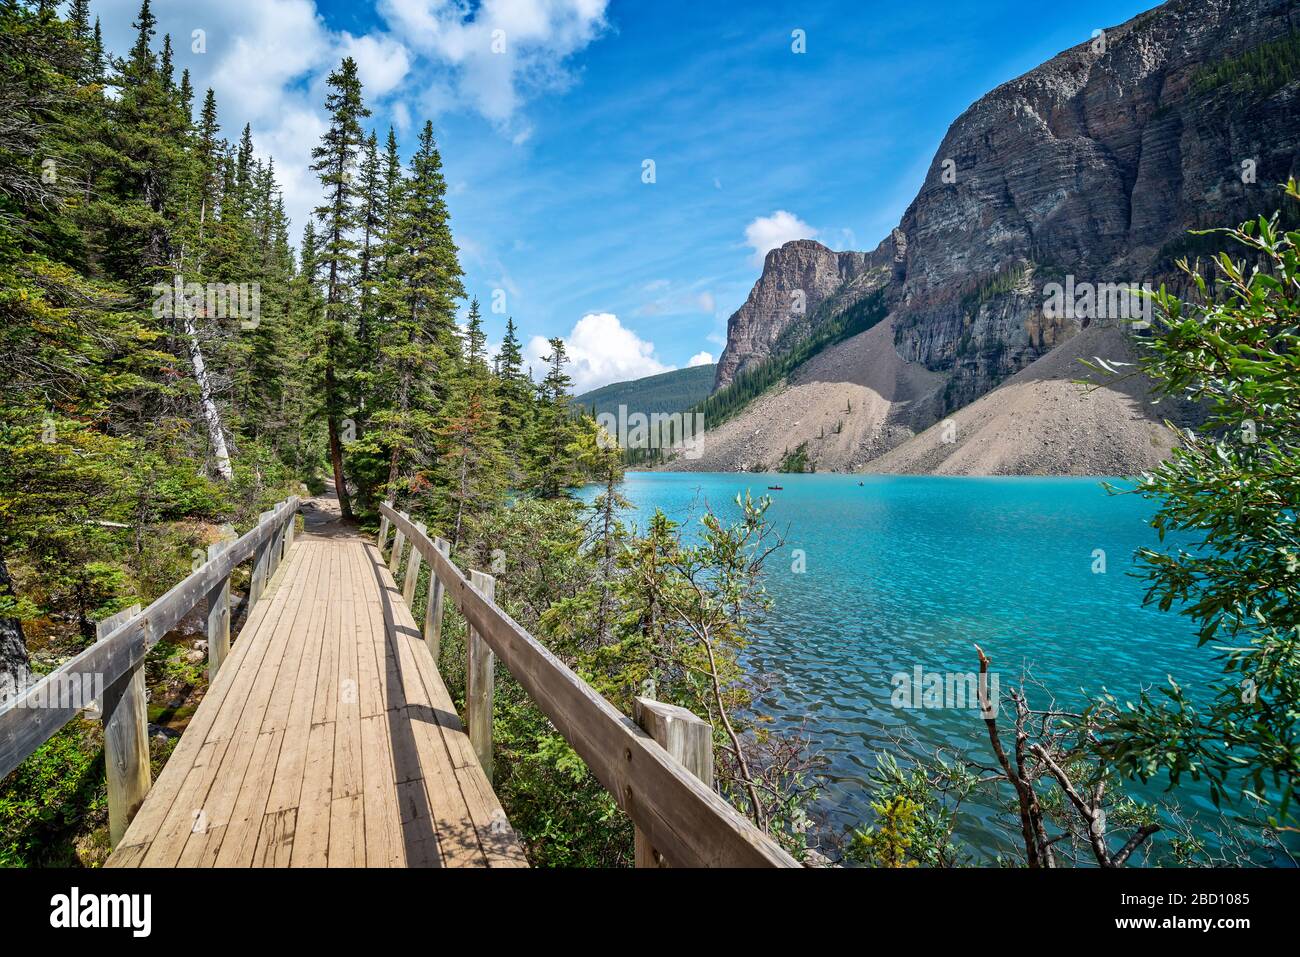 Sentier côtier du lac Moraine près du village de Lake Louise dans le parc national Banff, en Alberta, dans les montagnes Rocheuses, au Canada Banque D'Images